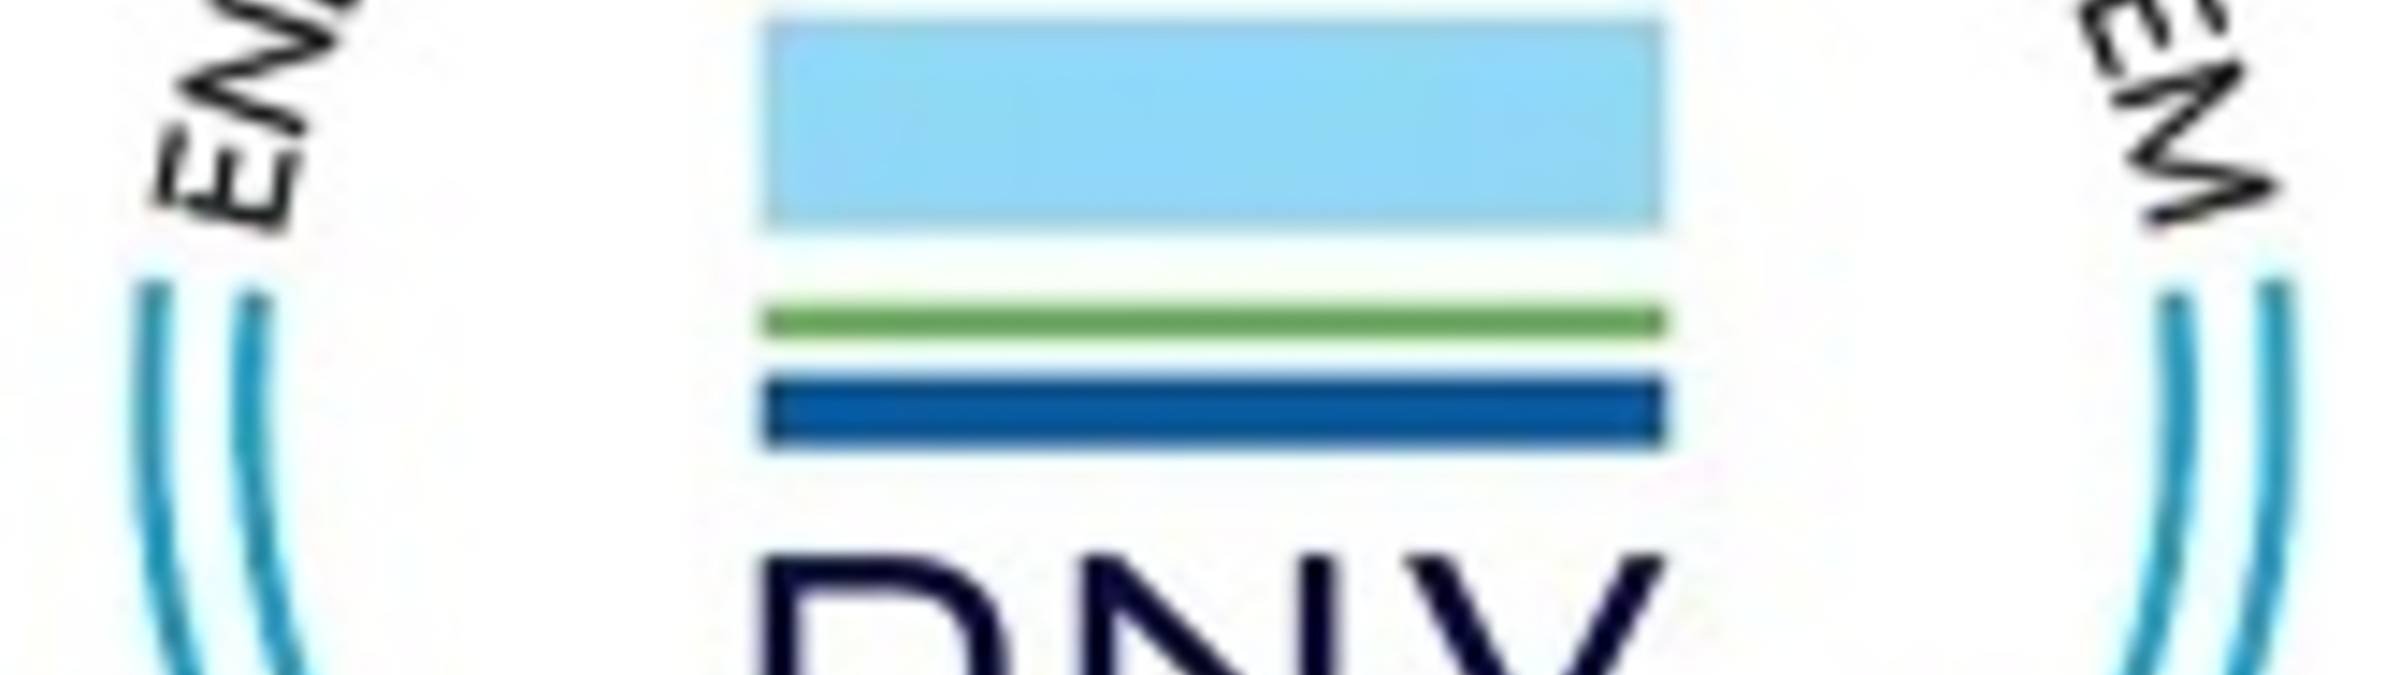 NUOVA CERTIFICAZIONE ISO 50001:2018 